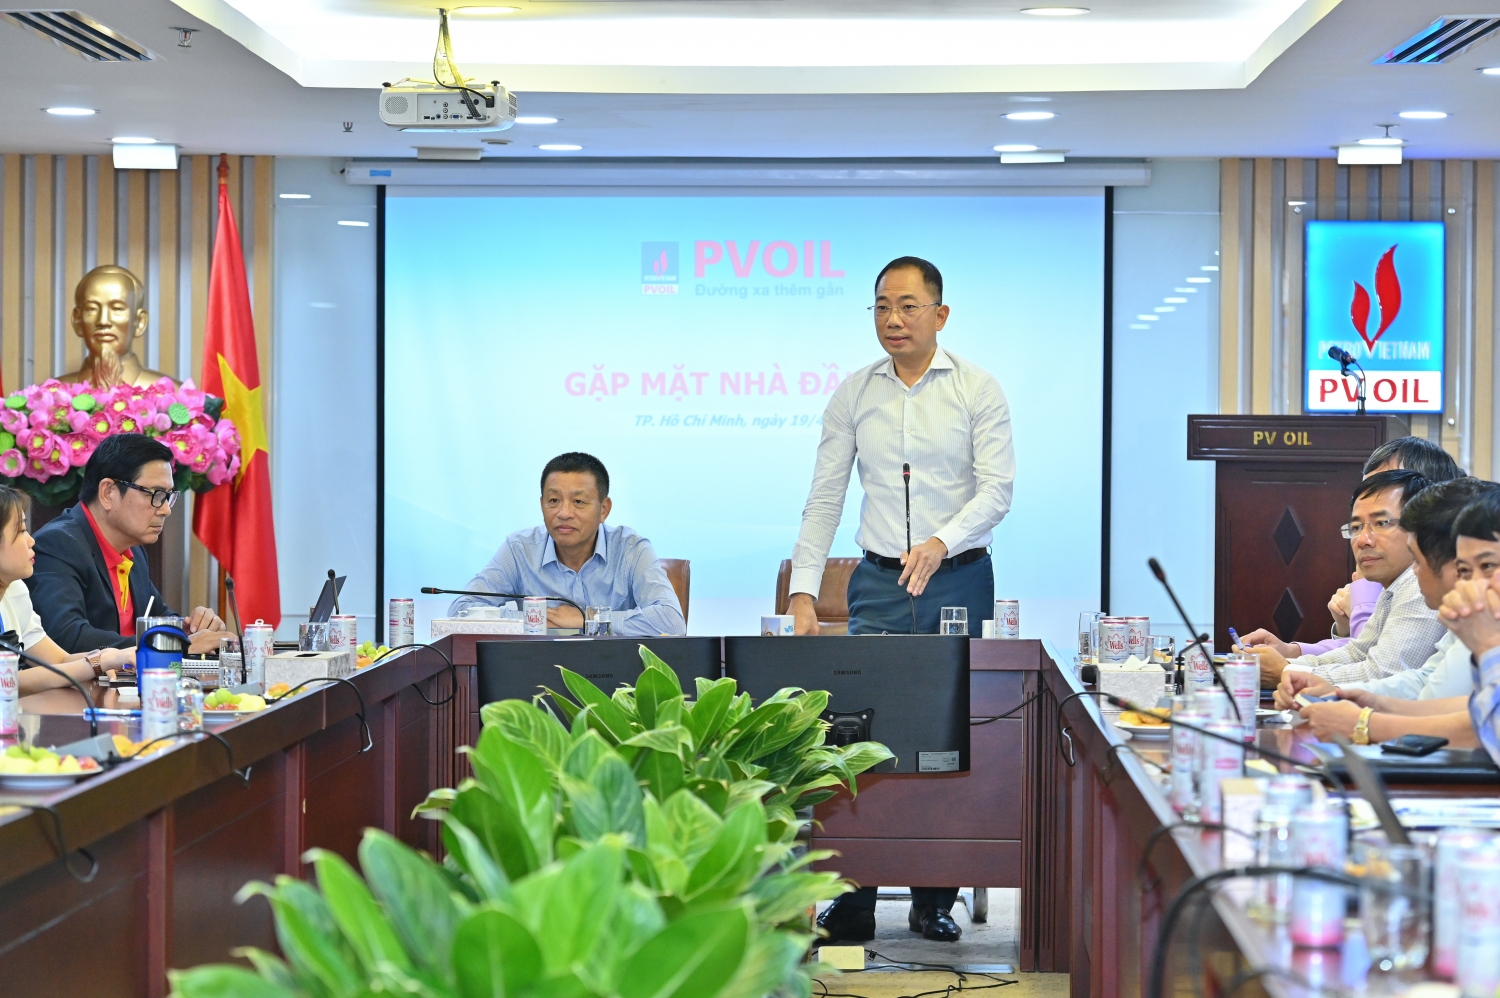 Ông Cao Hoài Dương – Chủ tịch HĐQT (phải) và ông Đoàn Văn Nhuộm – Tổng Giám đốc PVOIL (trái) chủ trì buổi gặp mặt